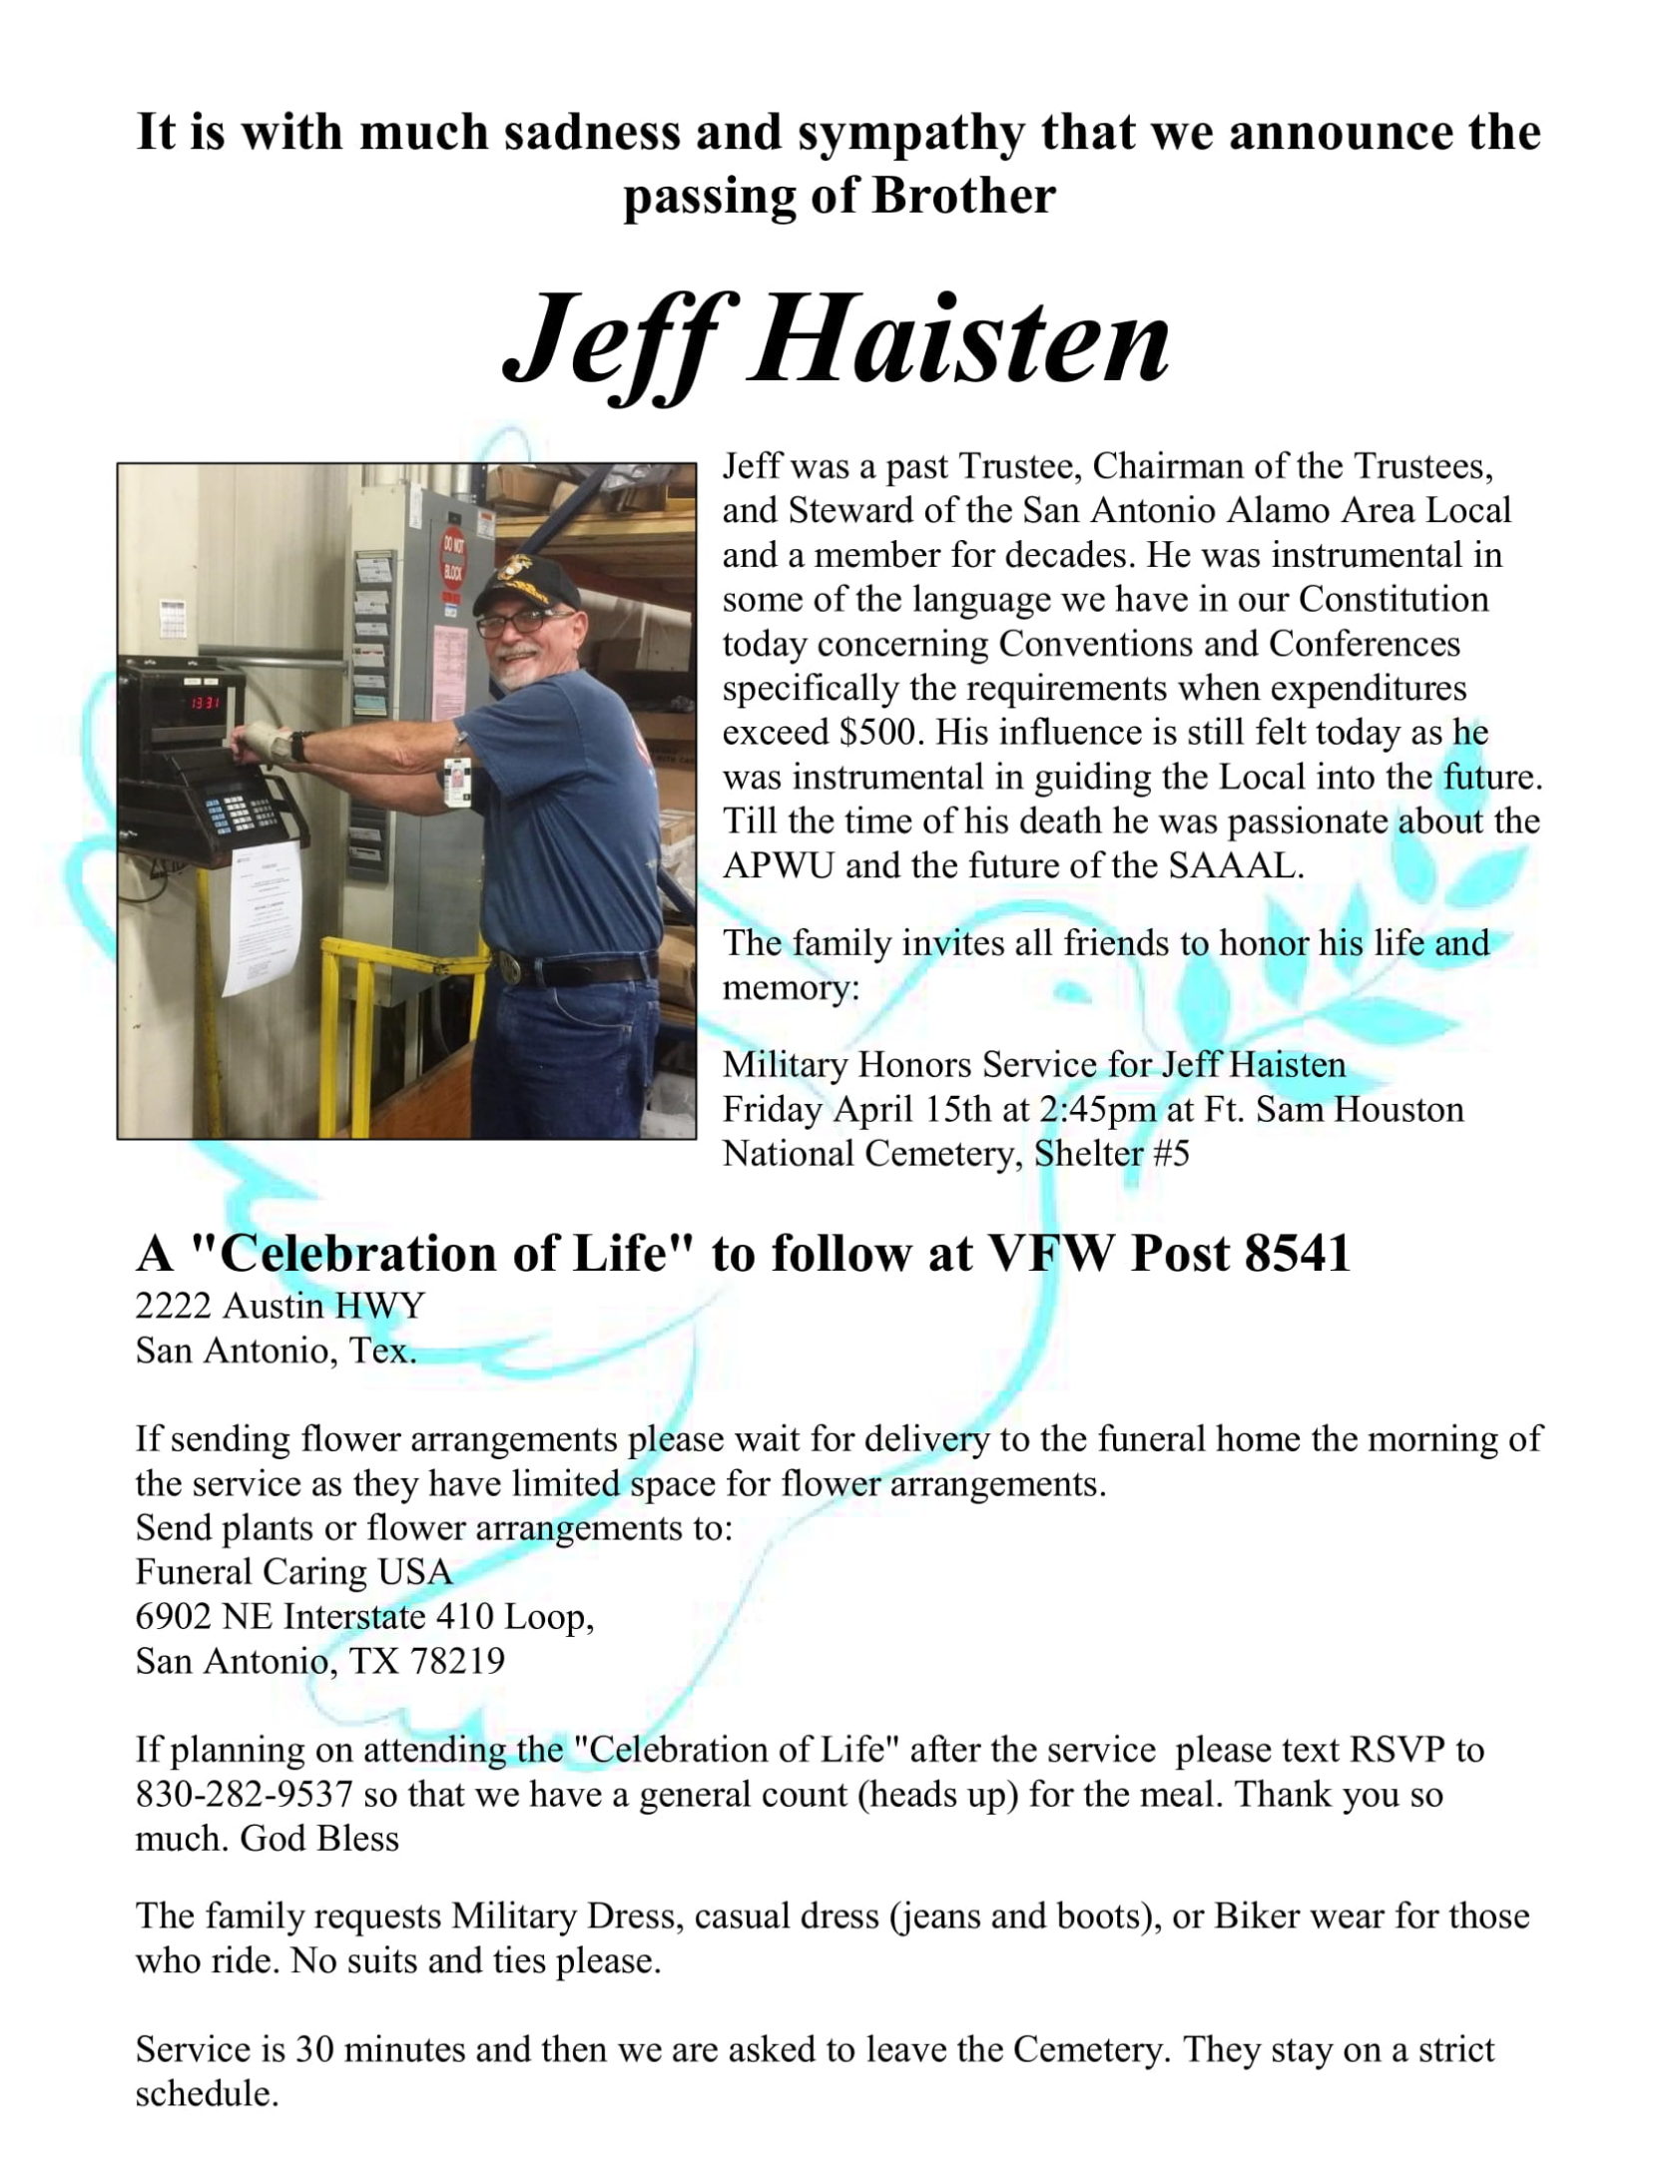 Jeff Haisten - 